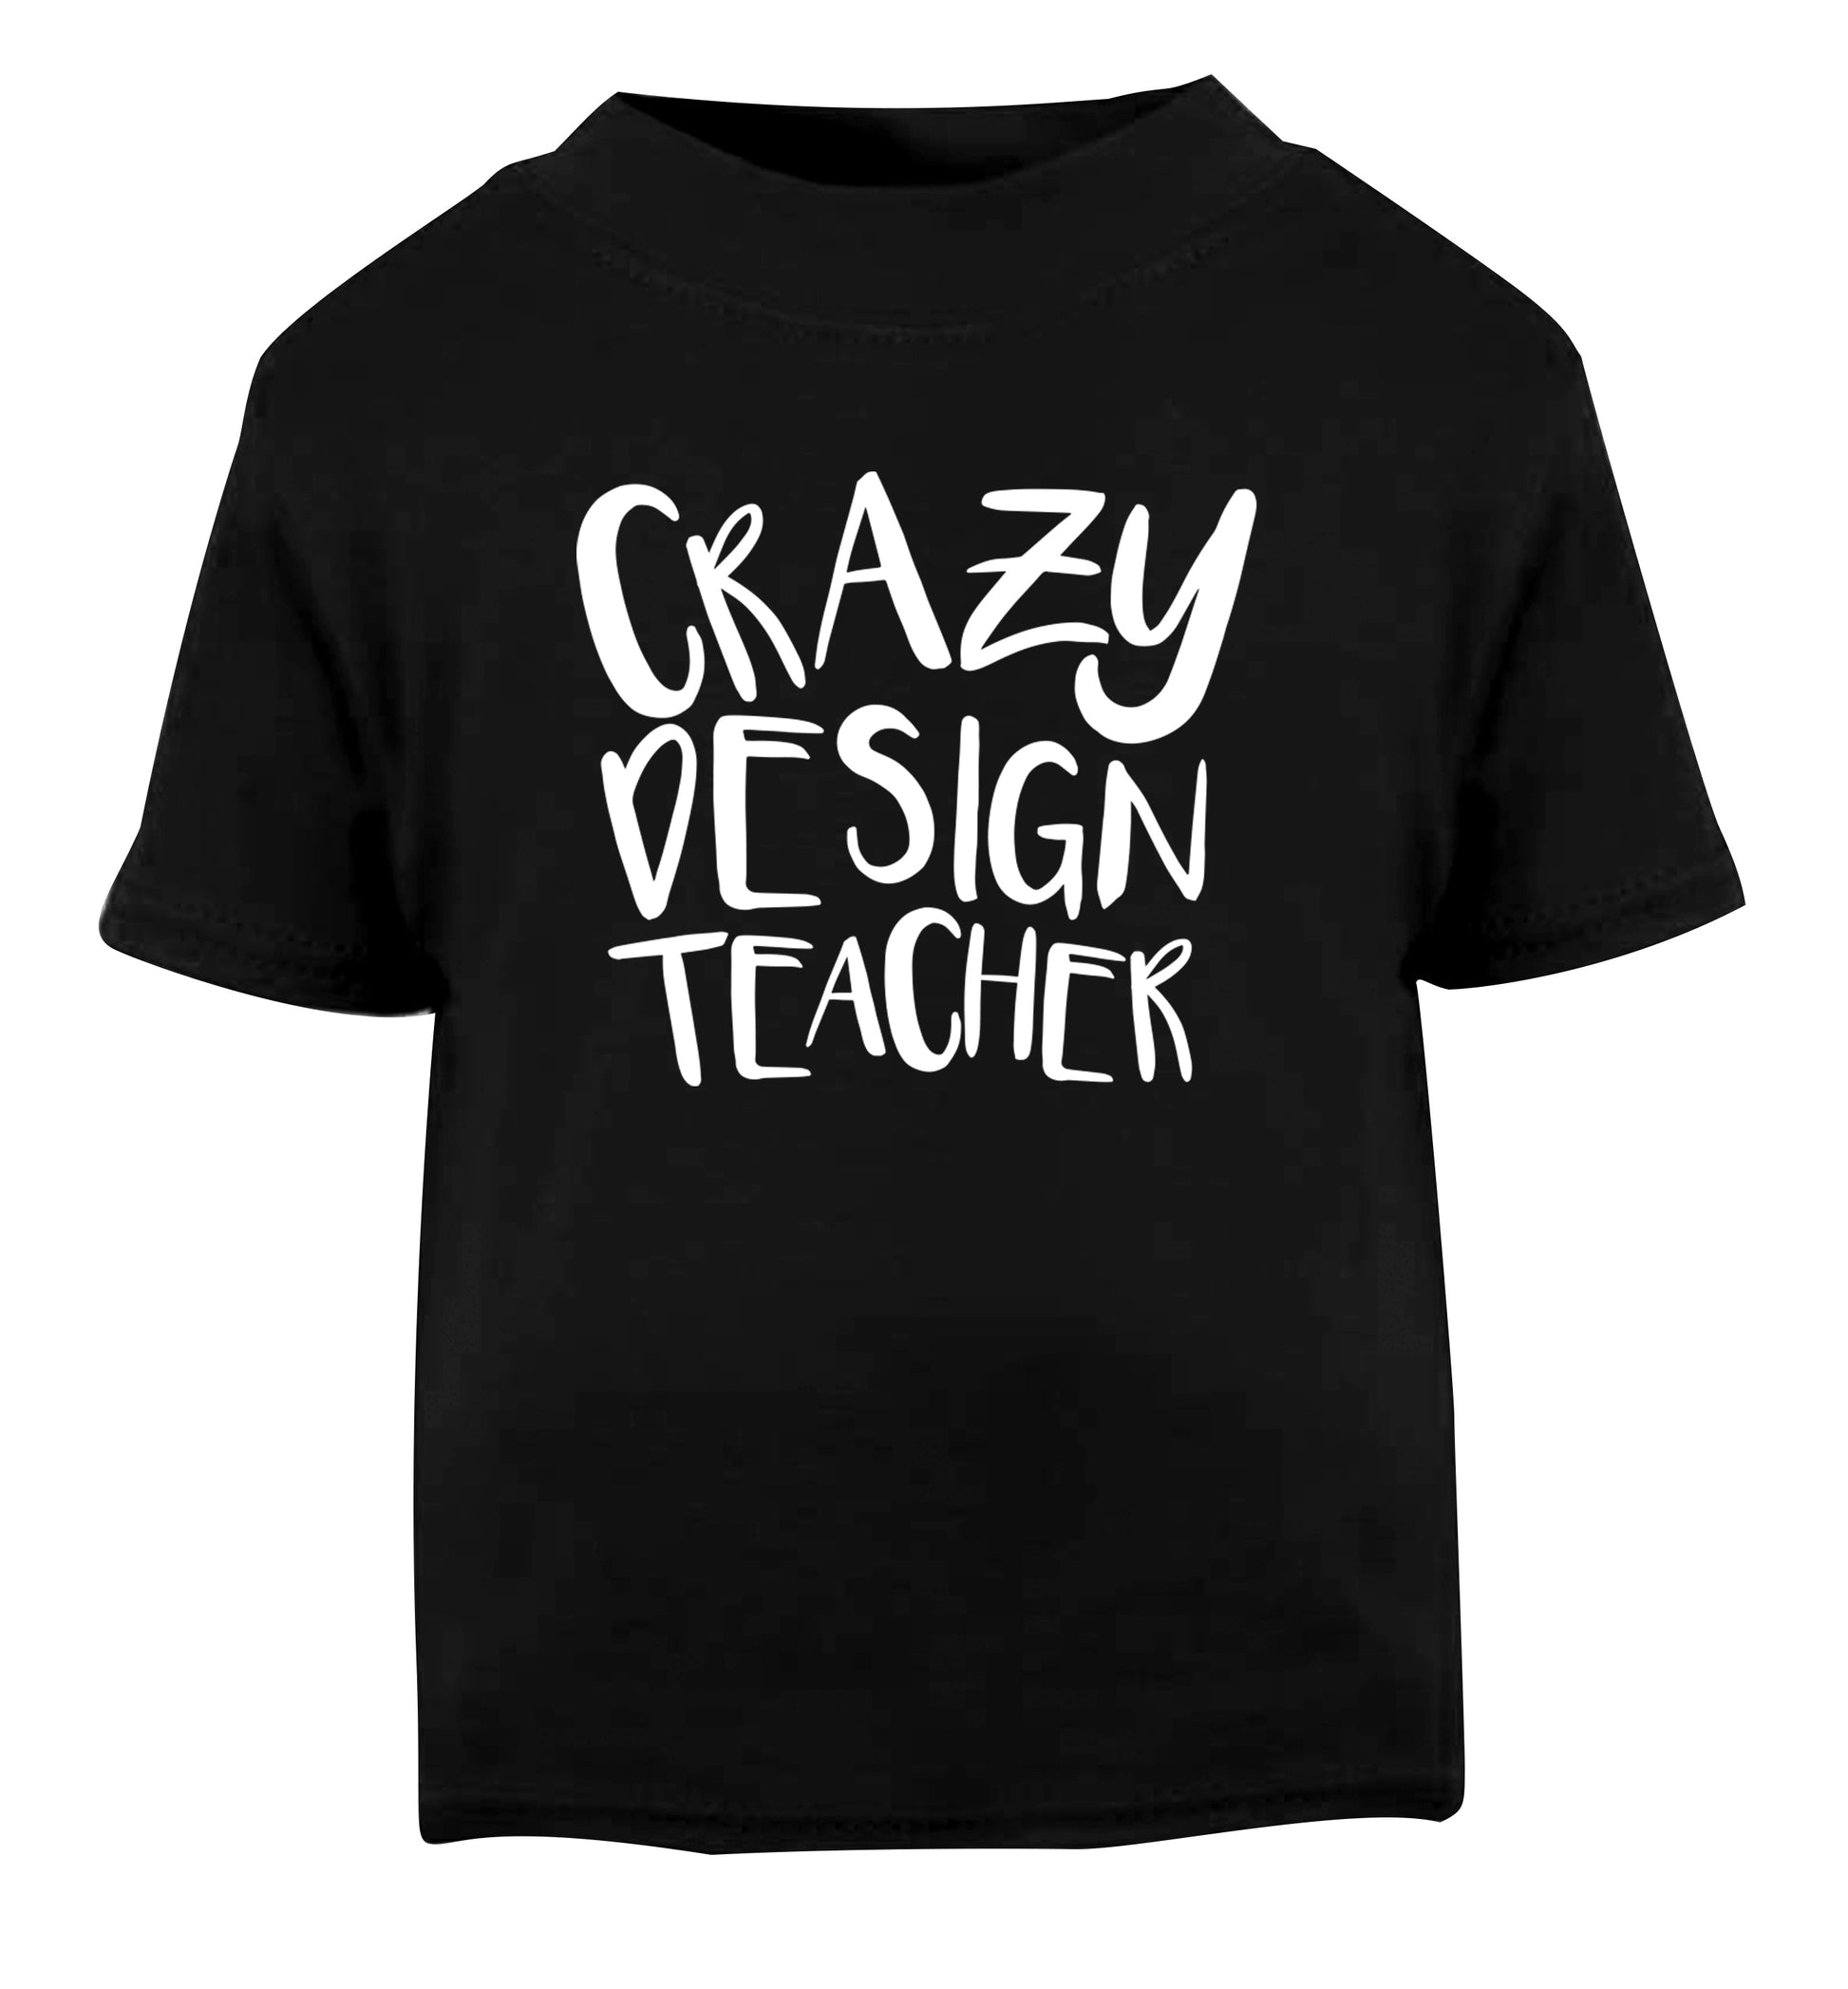 Crazy design teacher Black Baby Toddler Tshirt 2 years